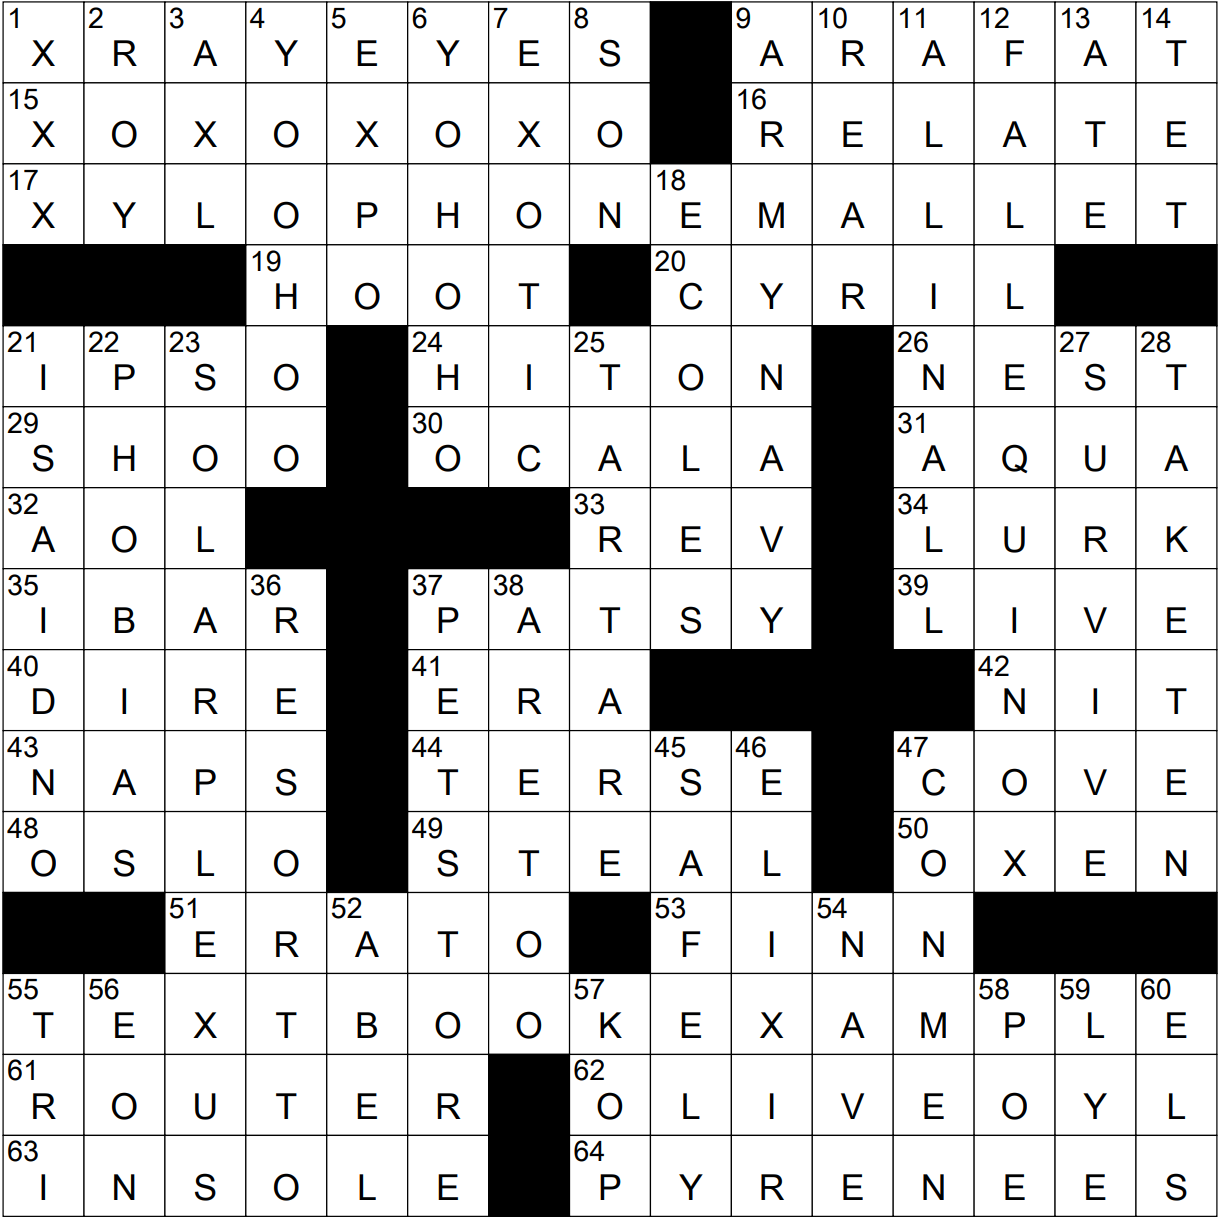 Solve the crossword